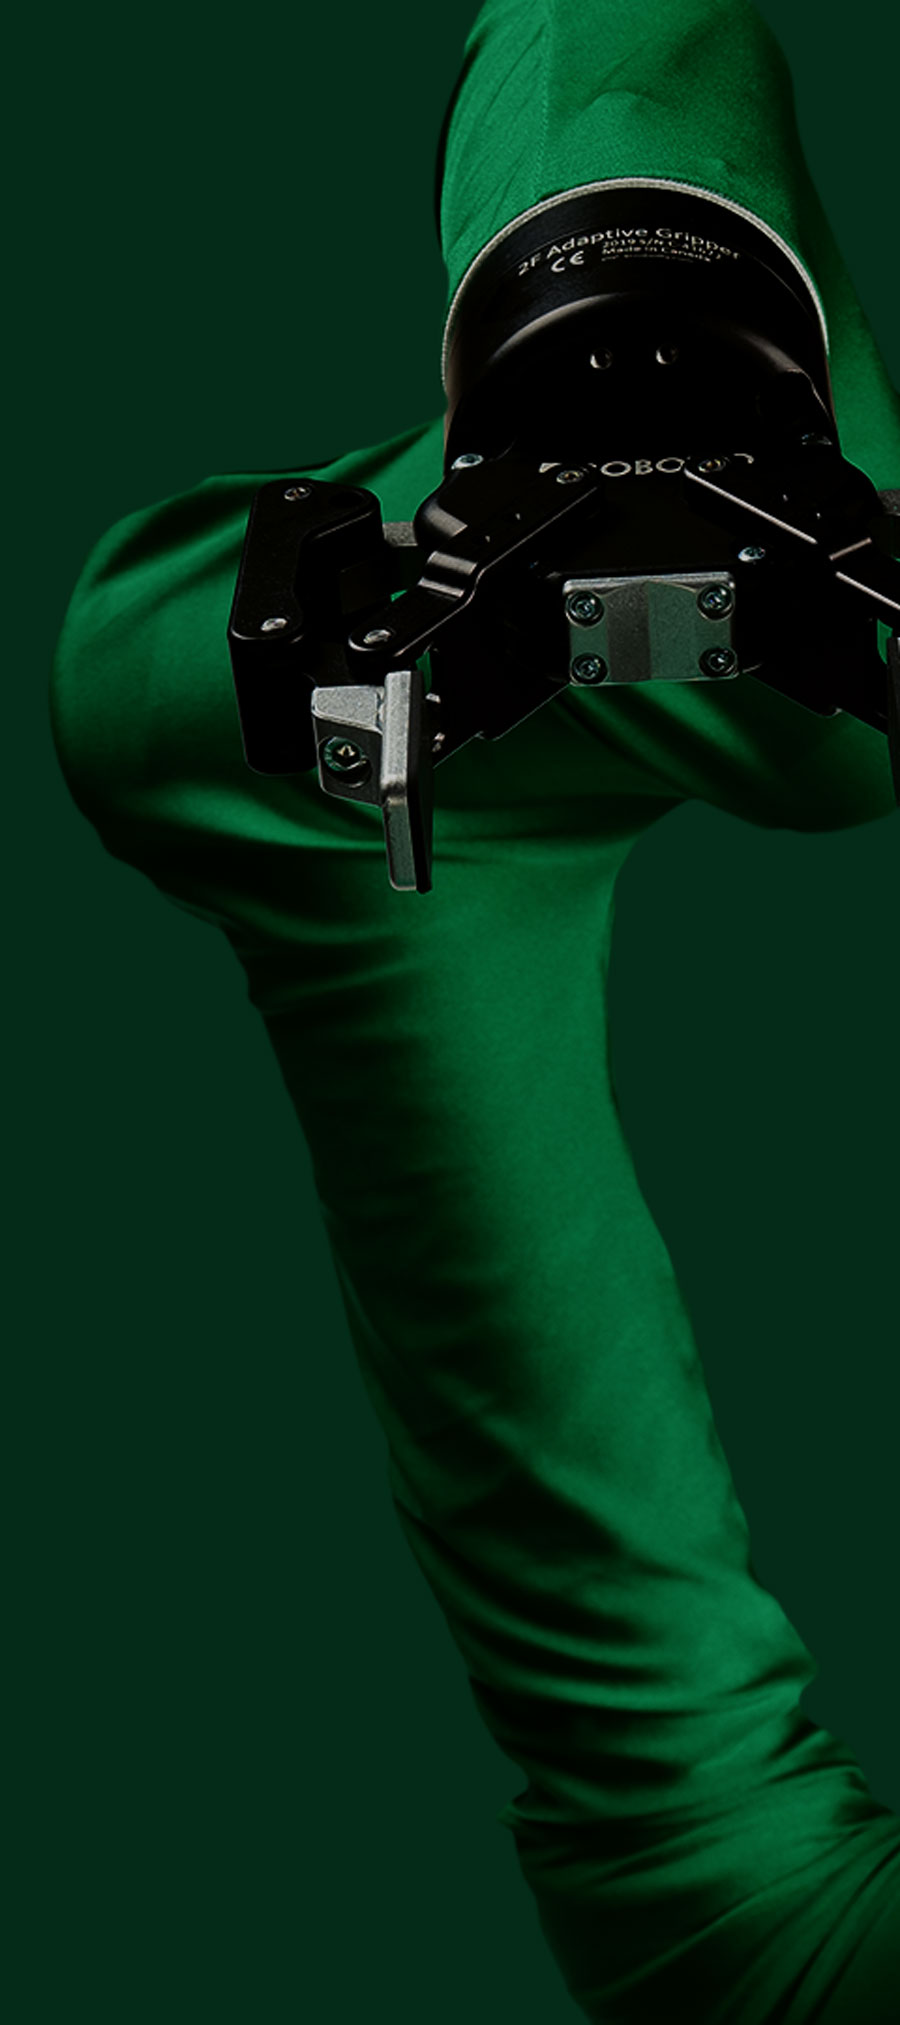 グリーンカラーのユニバーサルロボット専用ロボユニアームカバー 拡大写真